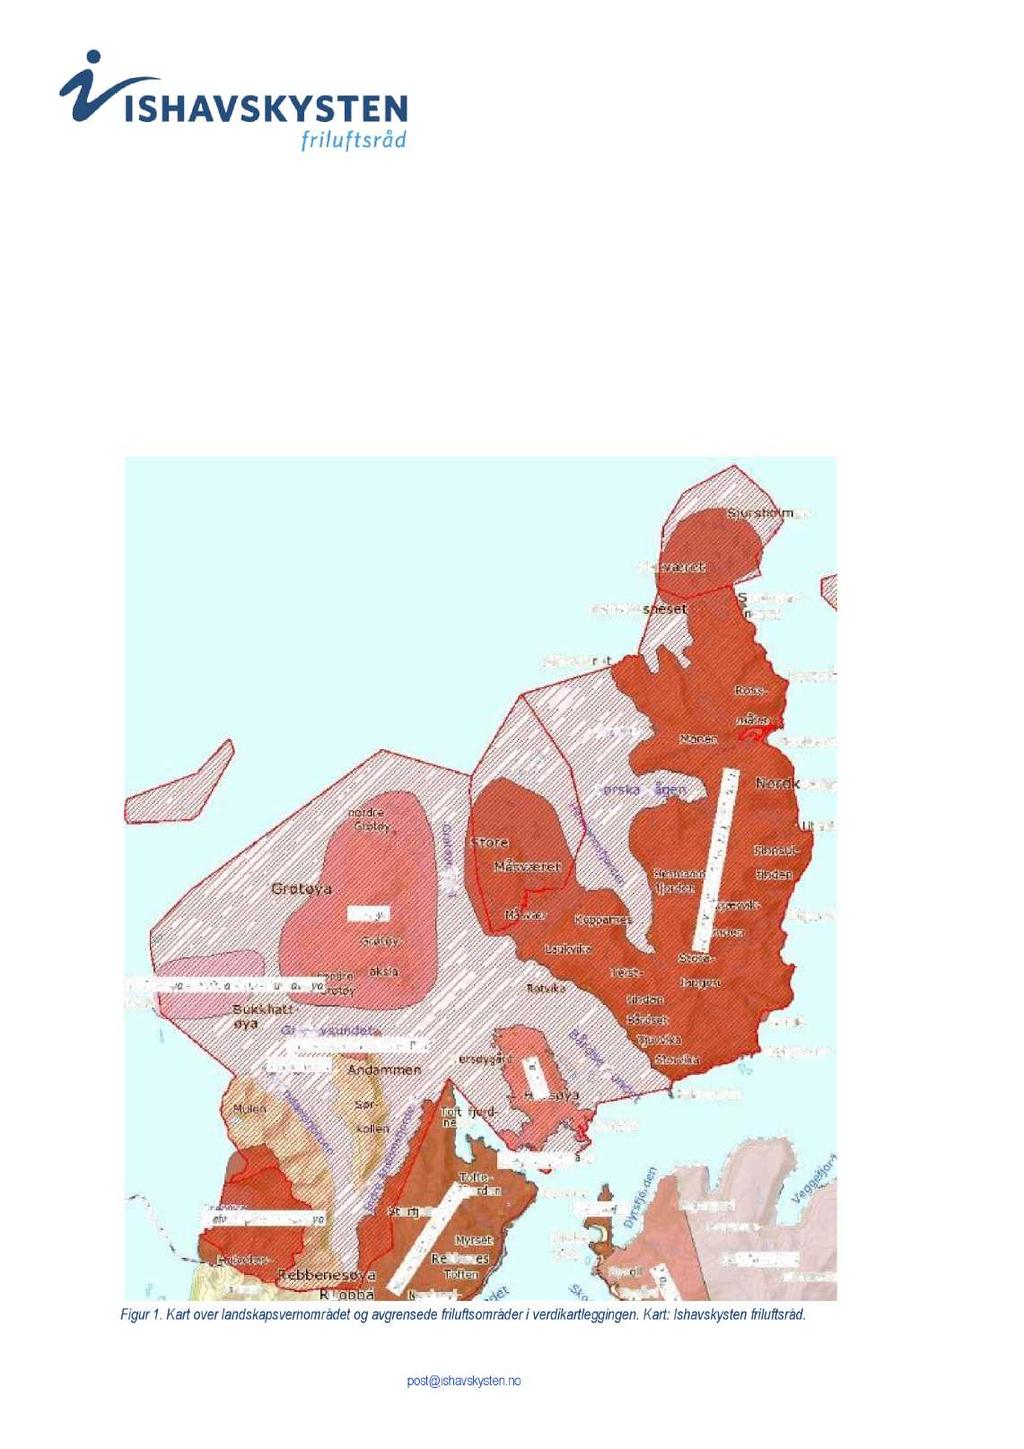 VEDLEGG- KARTLEGGINGOGVERDSETTINGAVVIKTIGEFRILUFTSOMRÅDER I NORKVALØYA - REBBENESØYA LANDSKAPSVERNOMRÅDE Avgrensedeområderi verdikartleggingen Mestepartenavdeavgrensede friluftsområdene